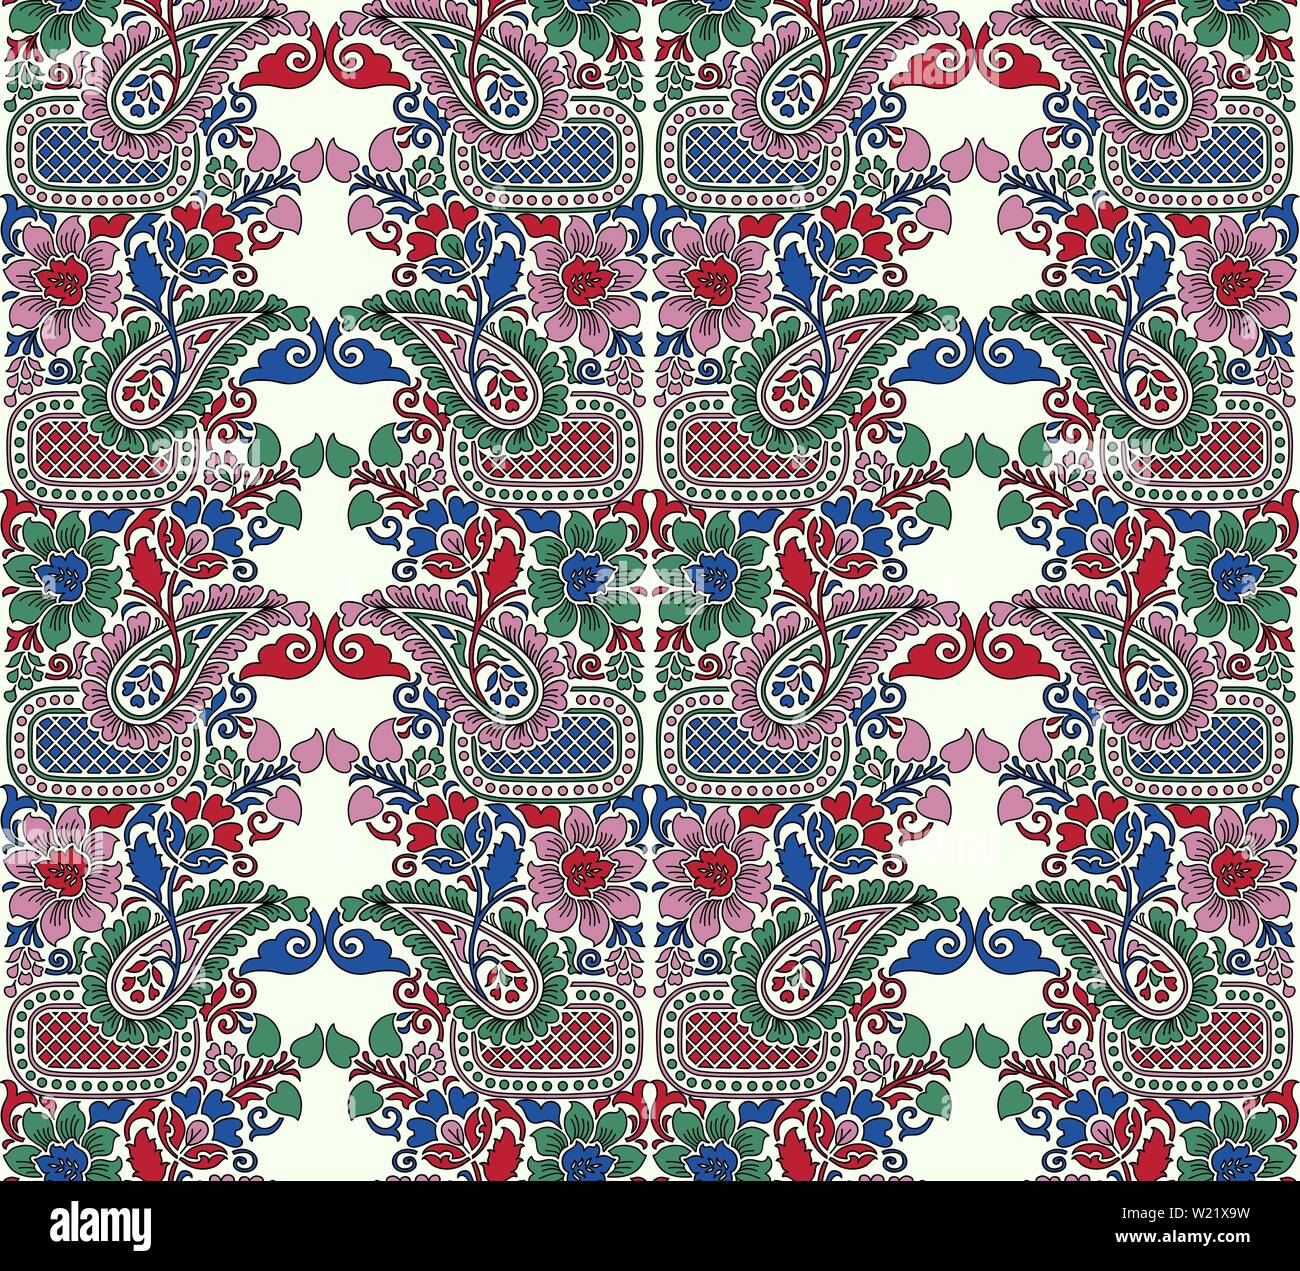 Imprimé sur bois motif floral ethnique homogène. Ornement oriental traditionnel de l'Inde, paisley et motif fleurs, rouge, vert, rose et bleu sur l'écru Illustration de Vecteur